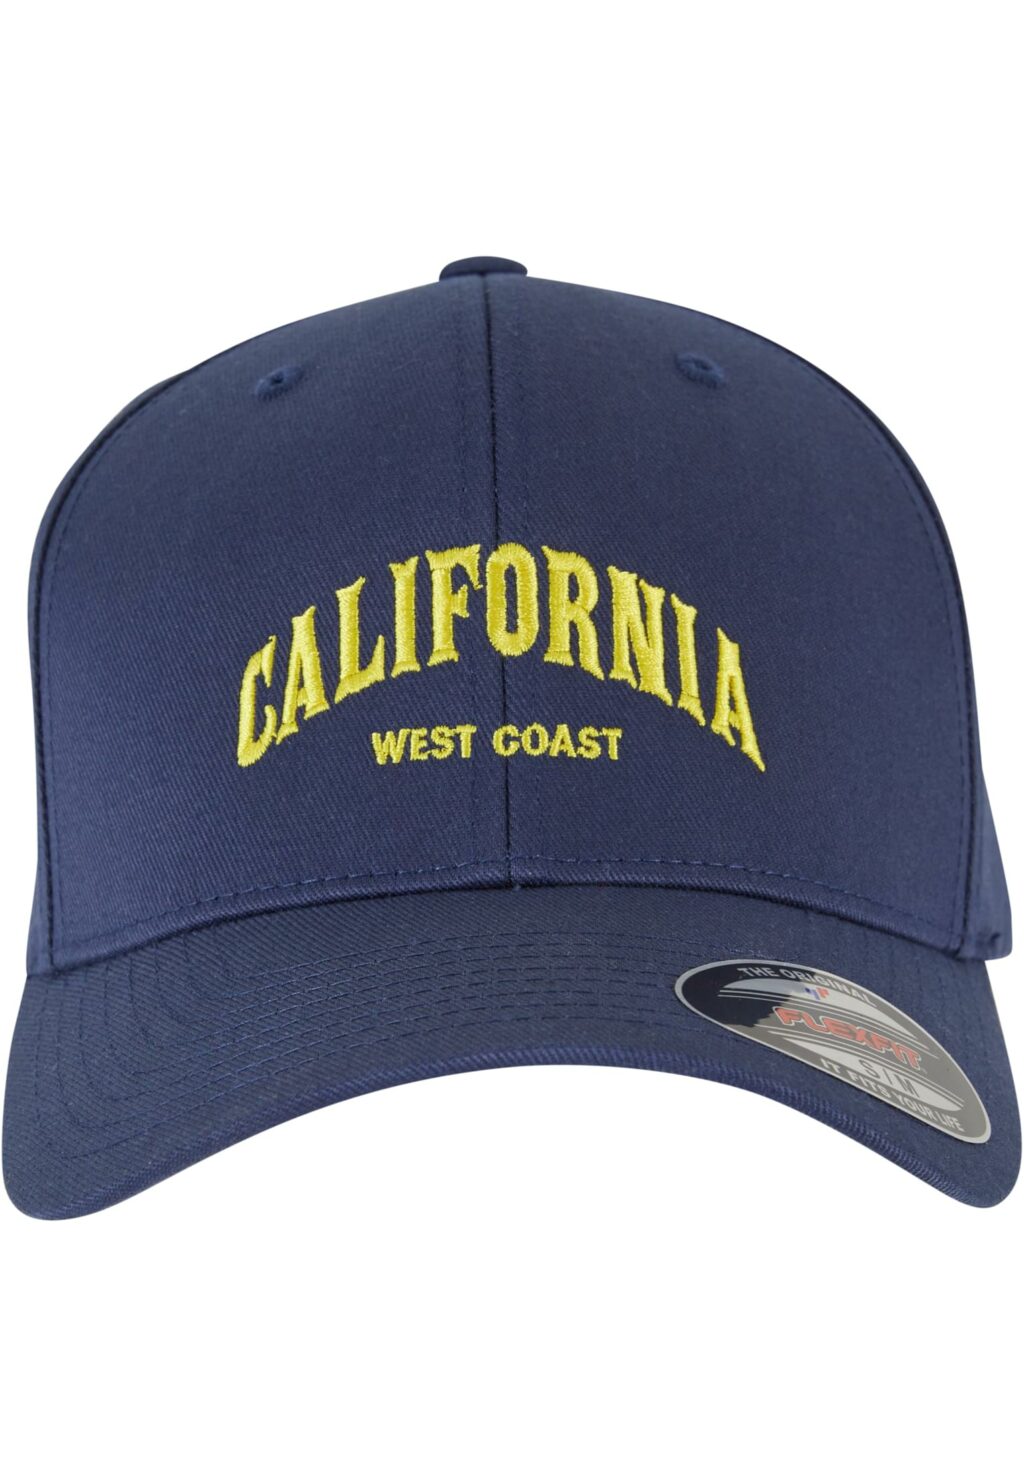 California Flexfit Cap navy MT2850